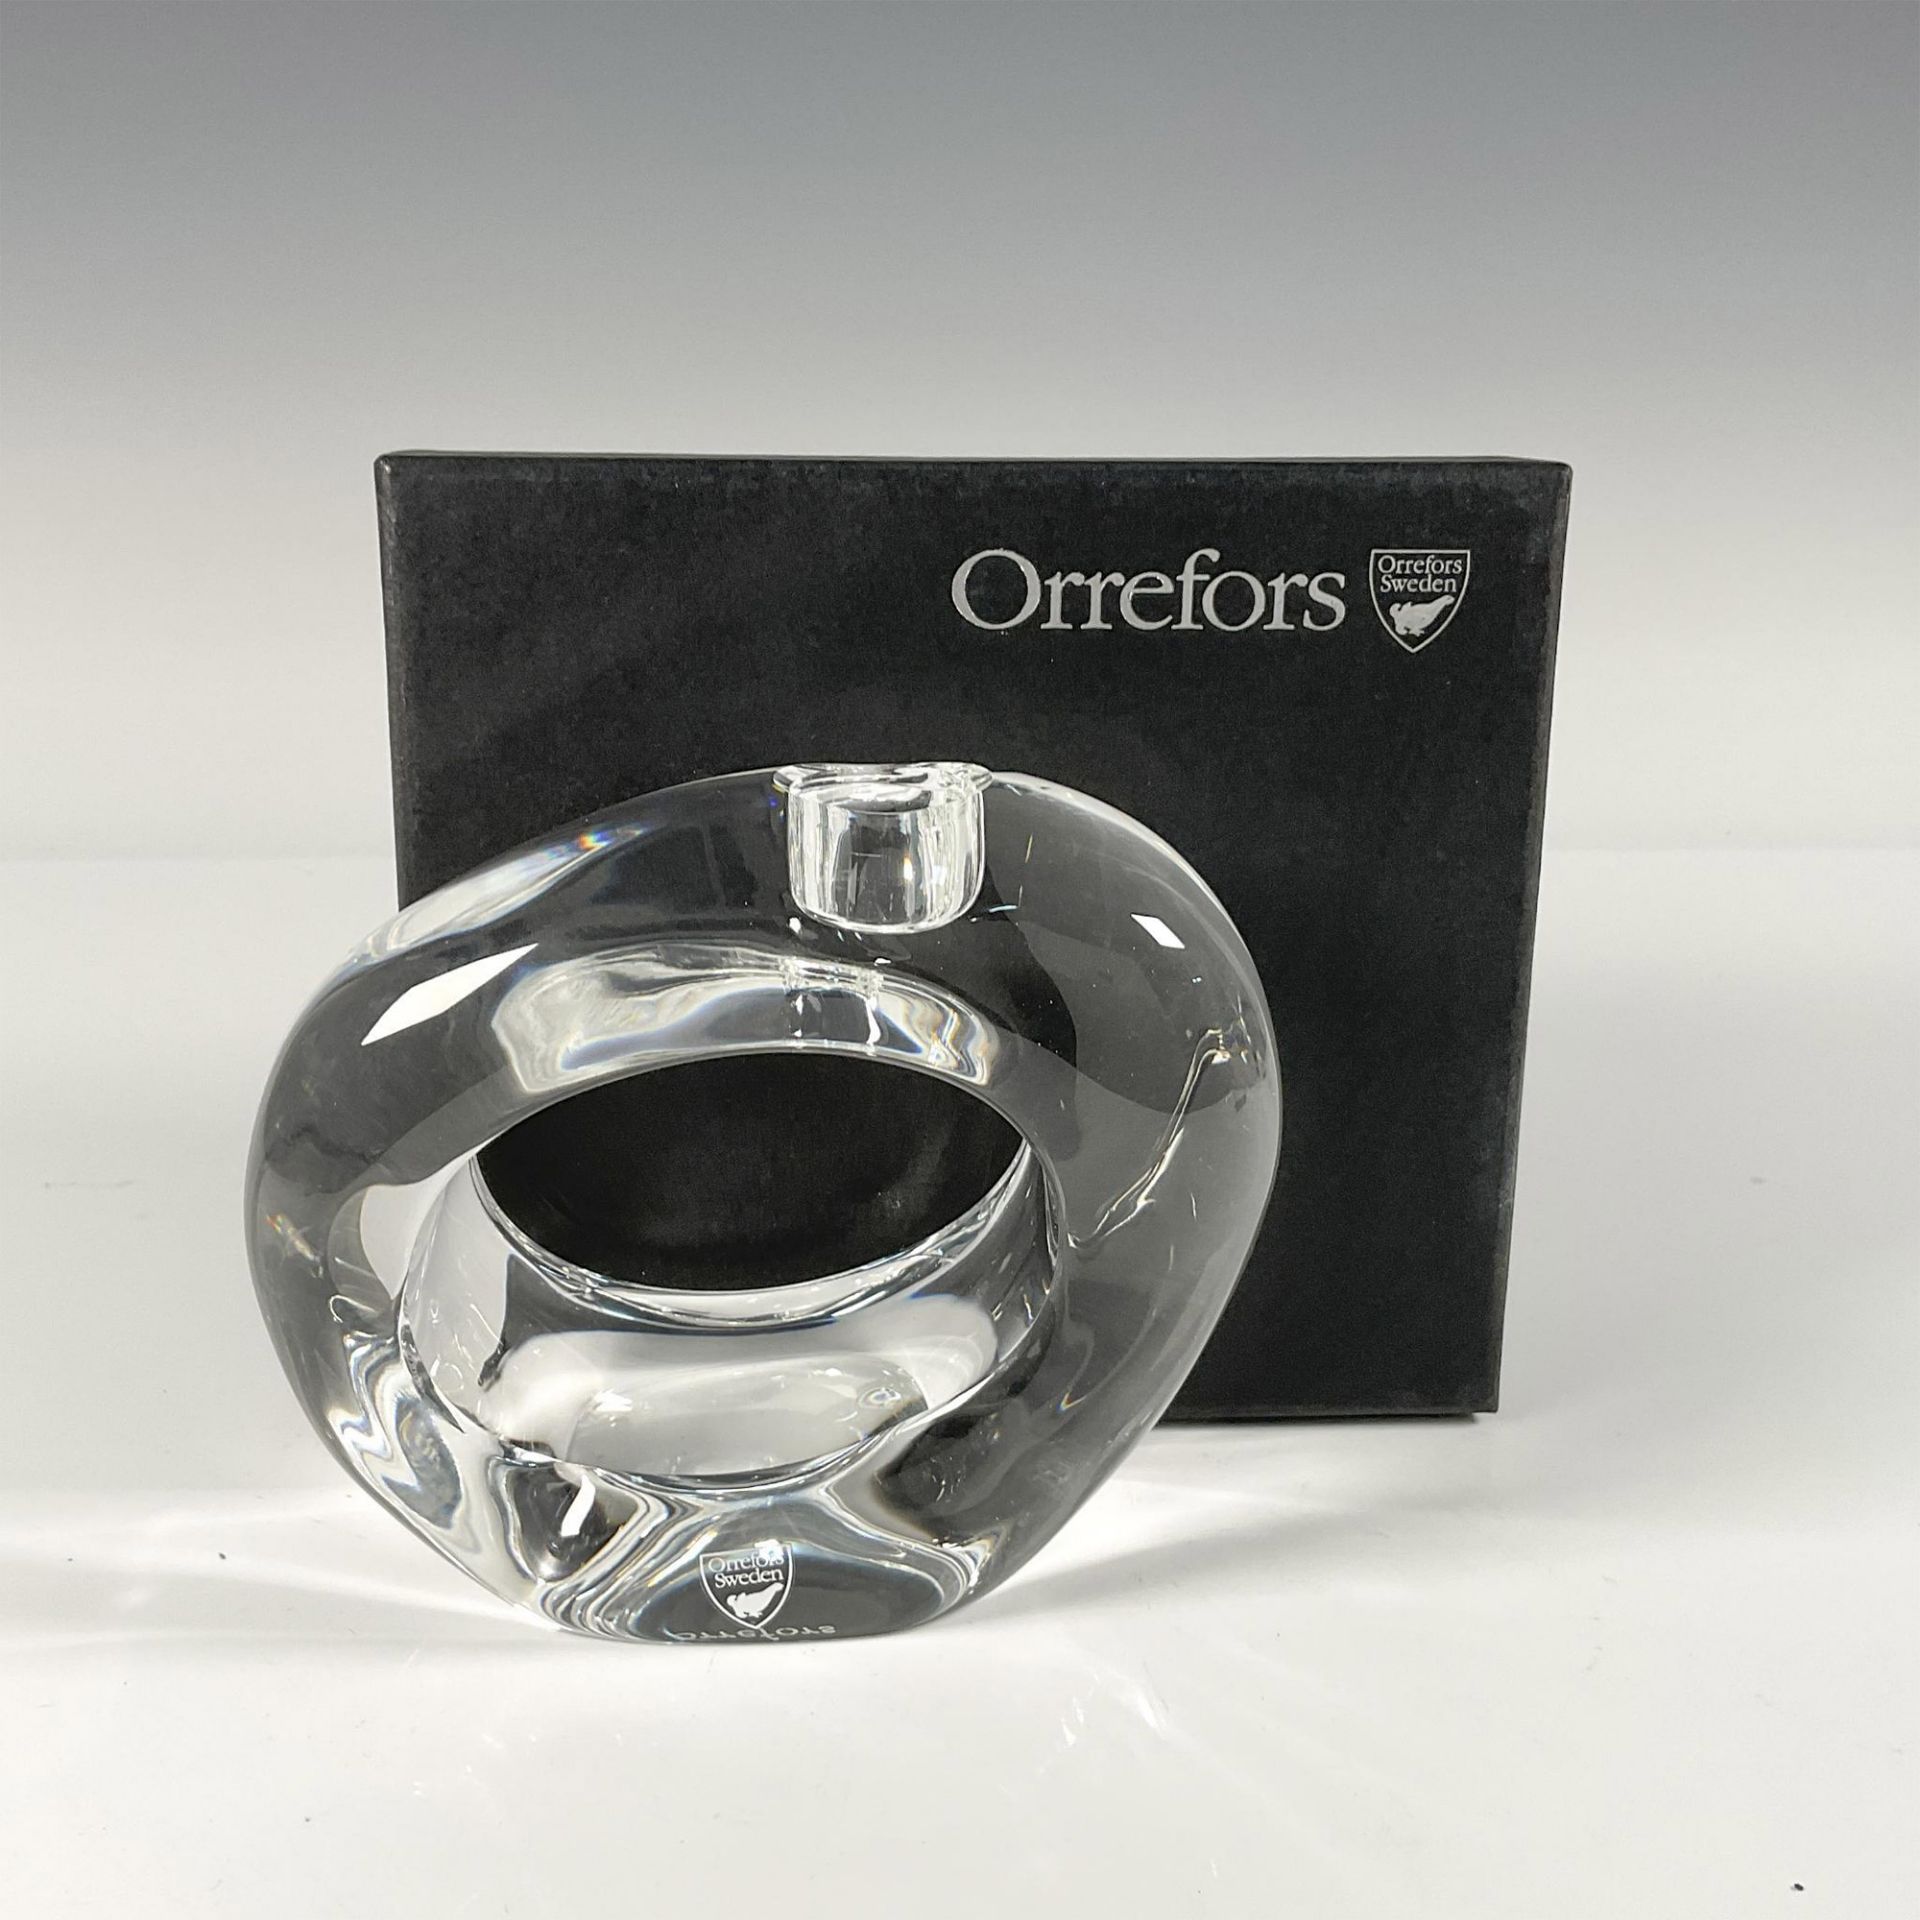 Orrefors Oval Crystal Candleholder, Avlang - Image 4 of 4